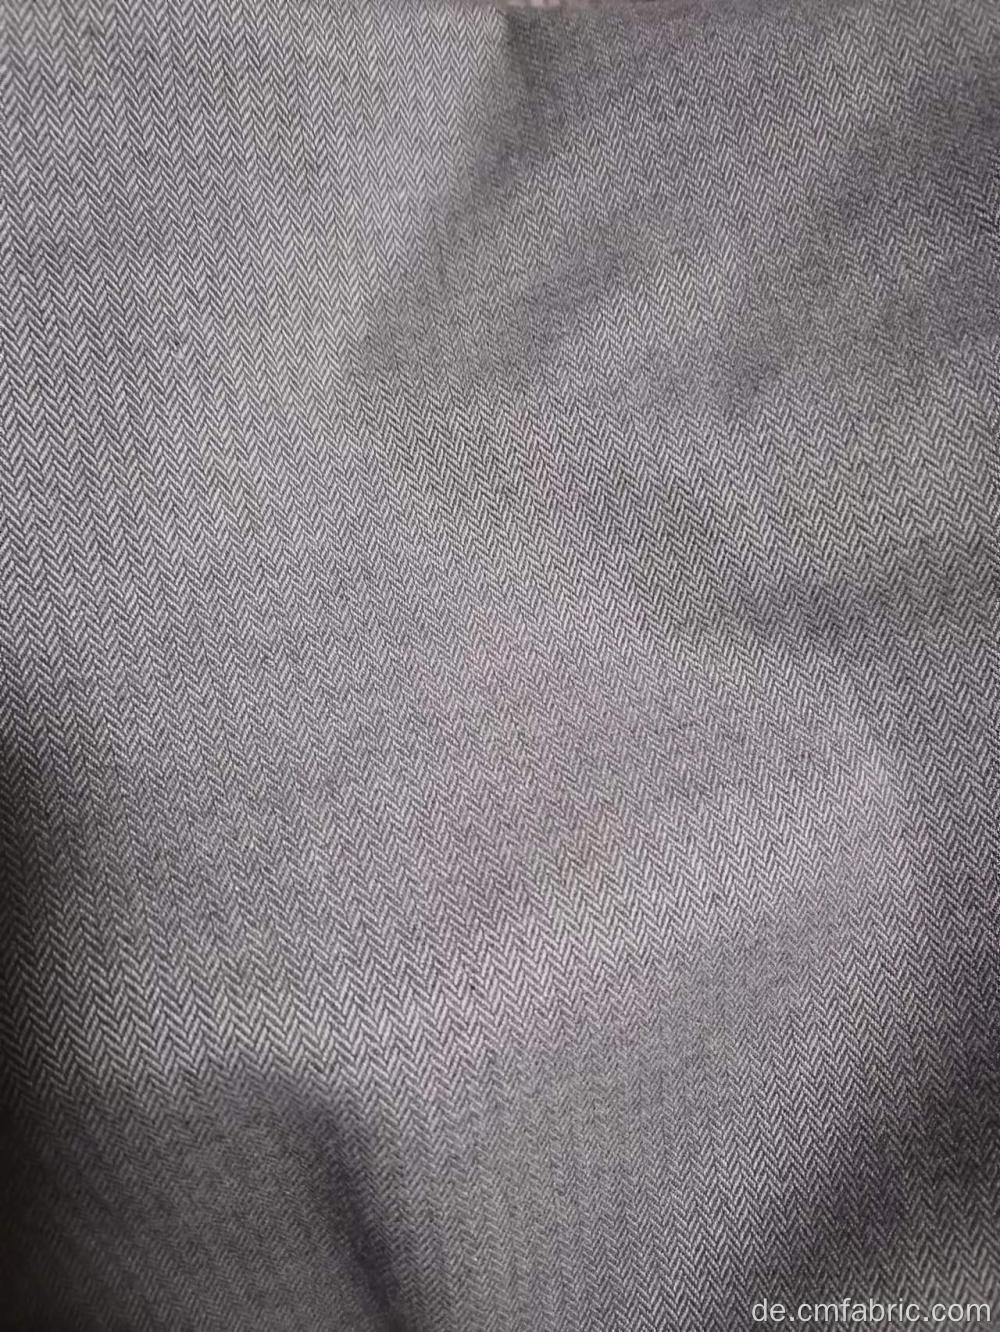 Gewebter Polyester Rayon Spandex Garn gefärbt Fischgrätengewebe